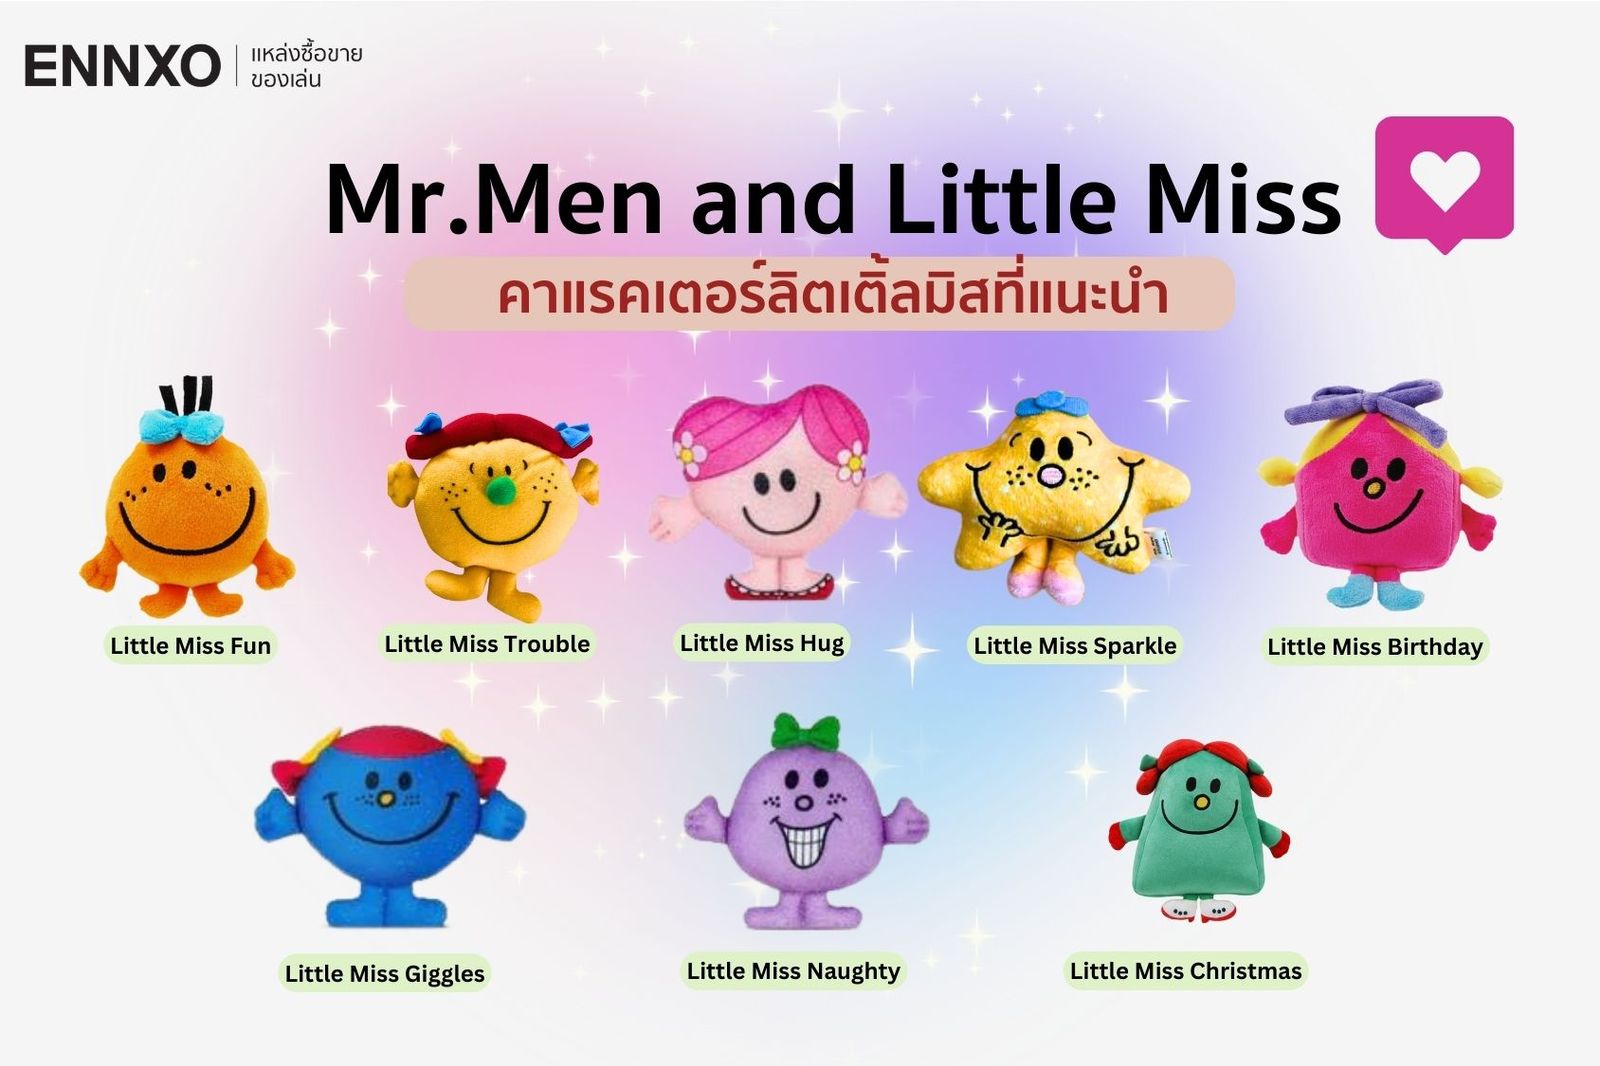 Mr.Men and Little Miss ความหมายแต่ละตัว และมีนิสัย